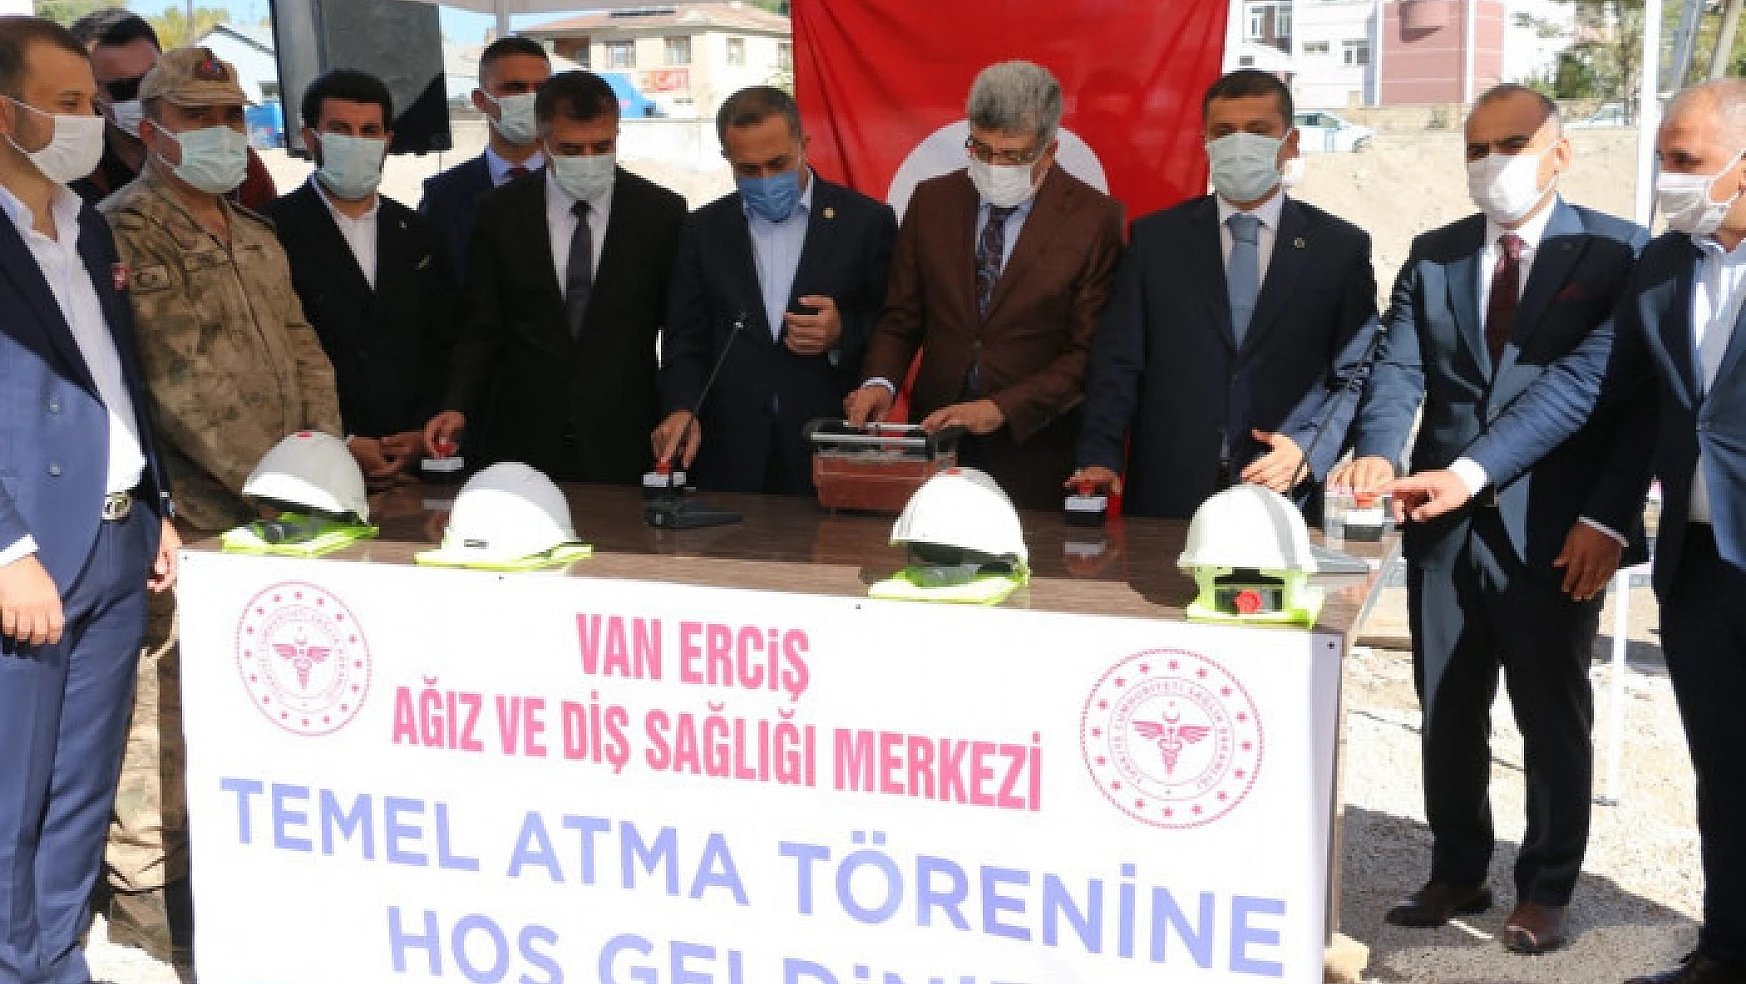 Erciş'te Ağız ve Diş Sağlığı Merkezi'nin temeli atıldı